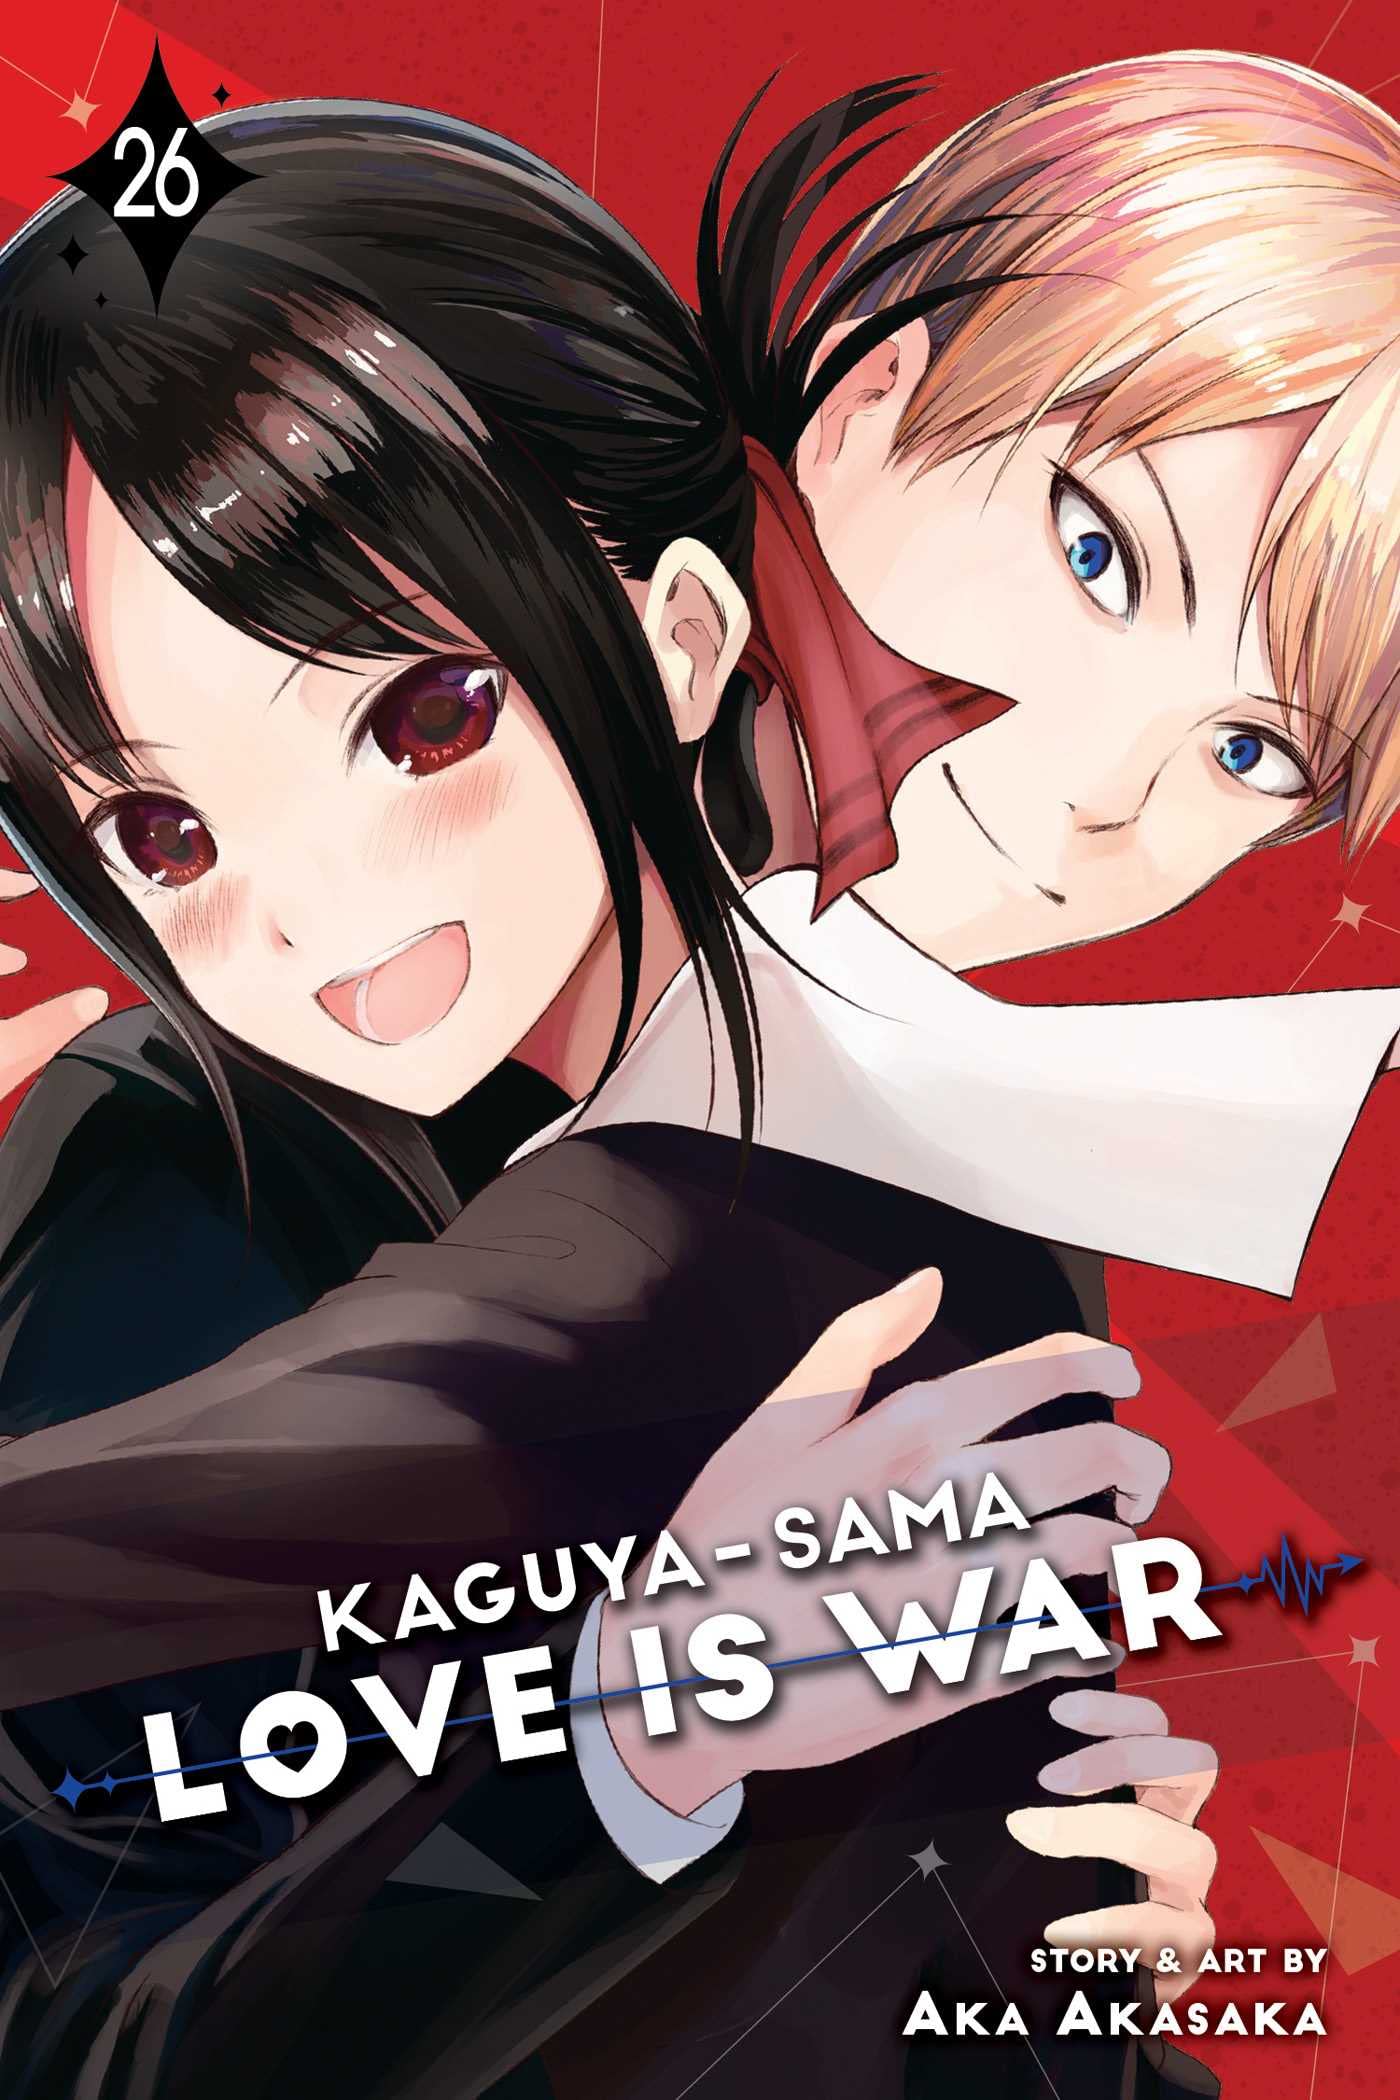 Kaguya-sama: Love Is War Vol. 26